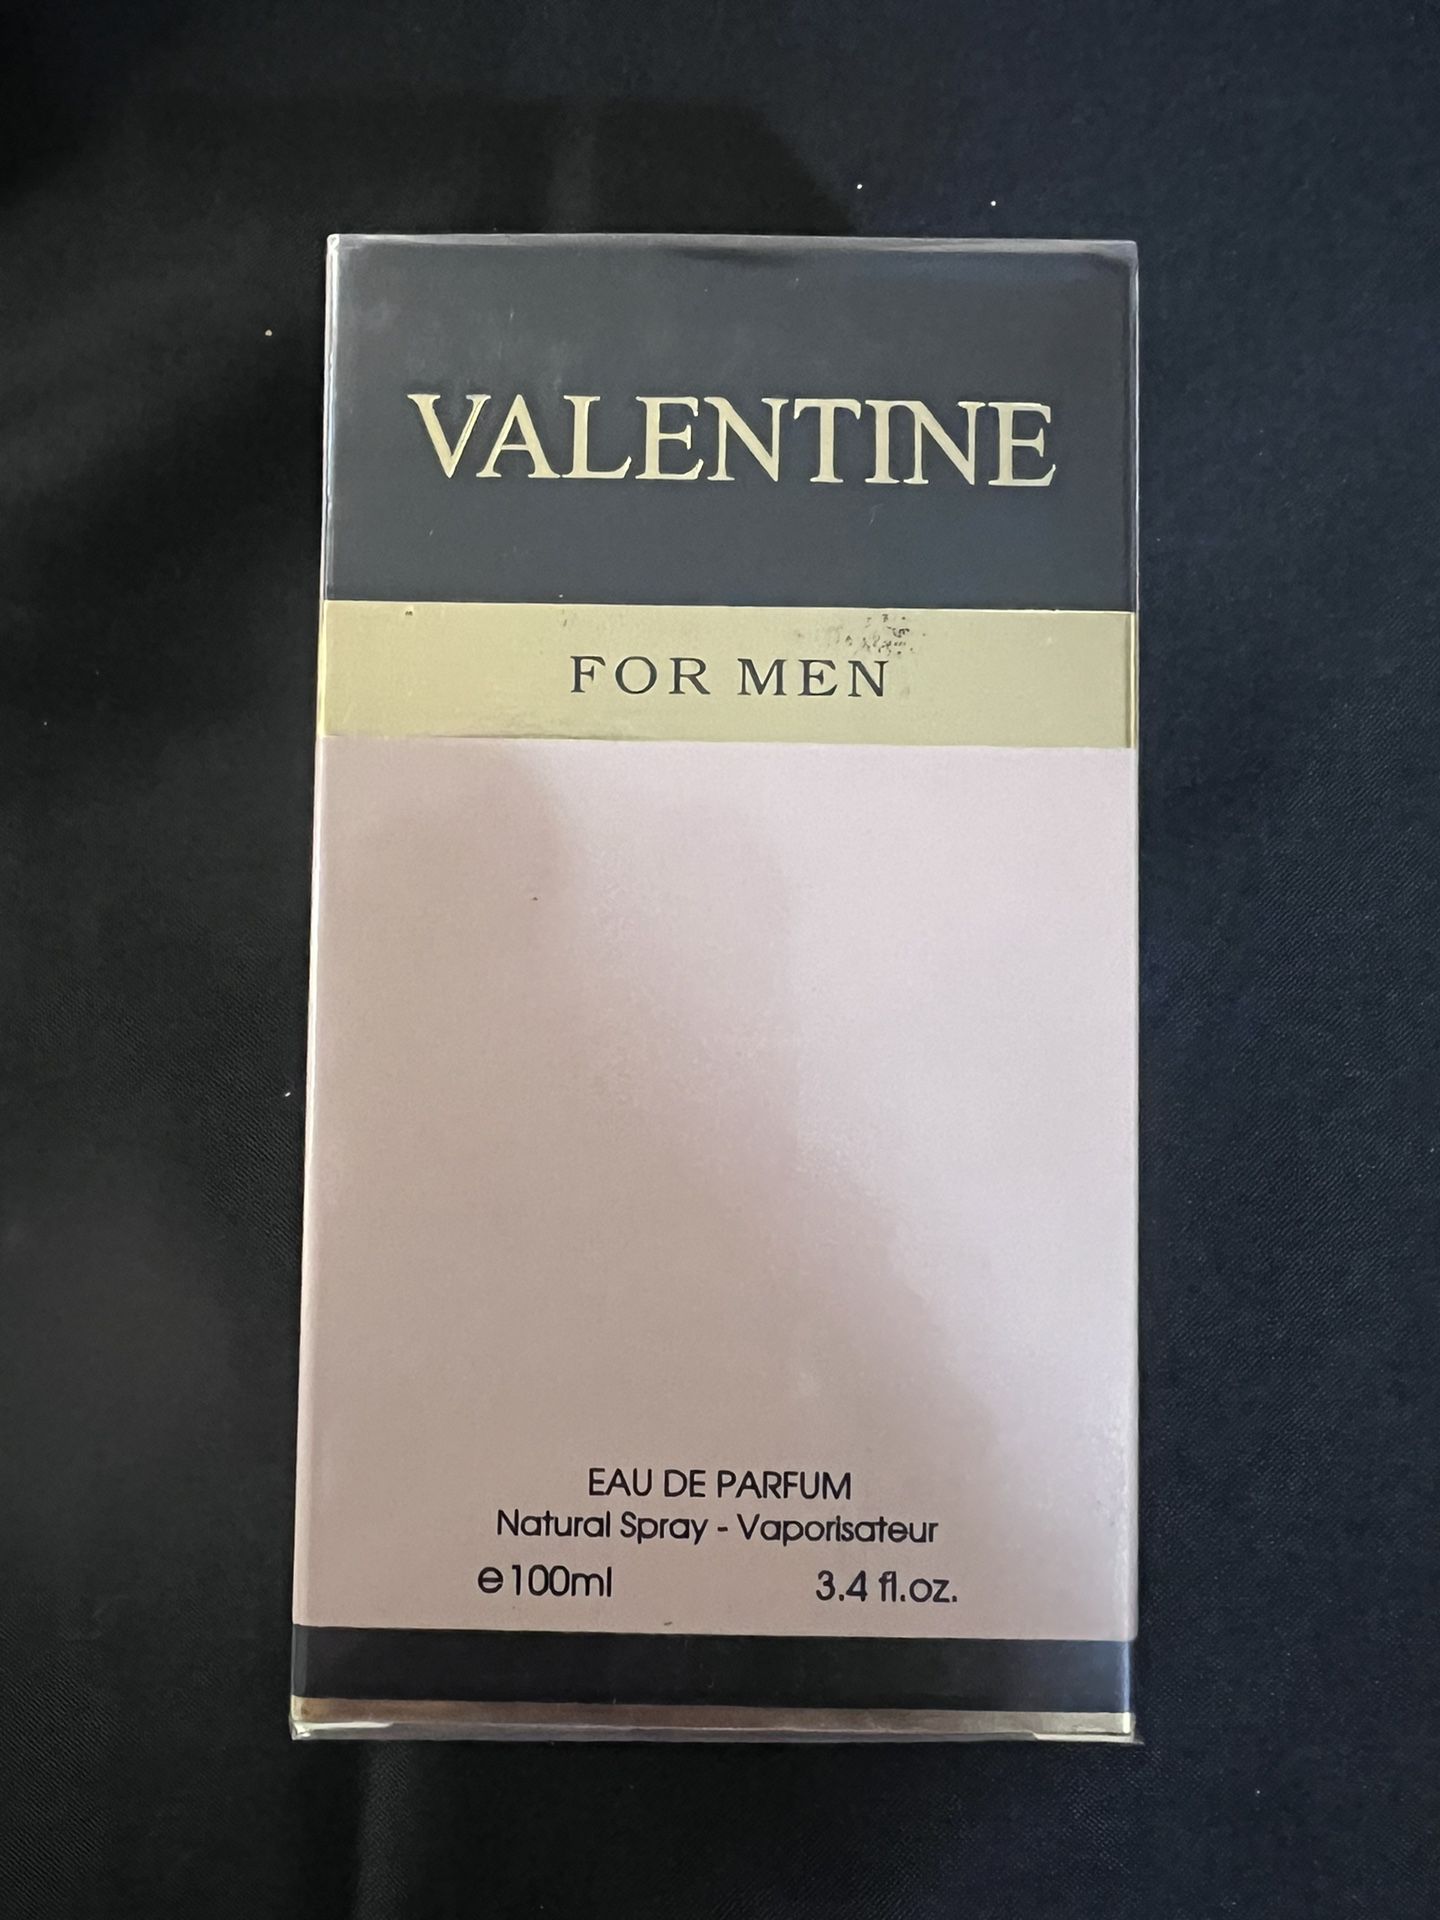 Valentine For Men Eau De Parfum 3.4 Oz